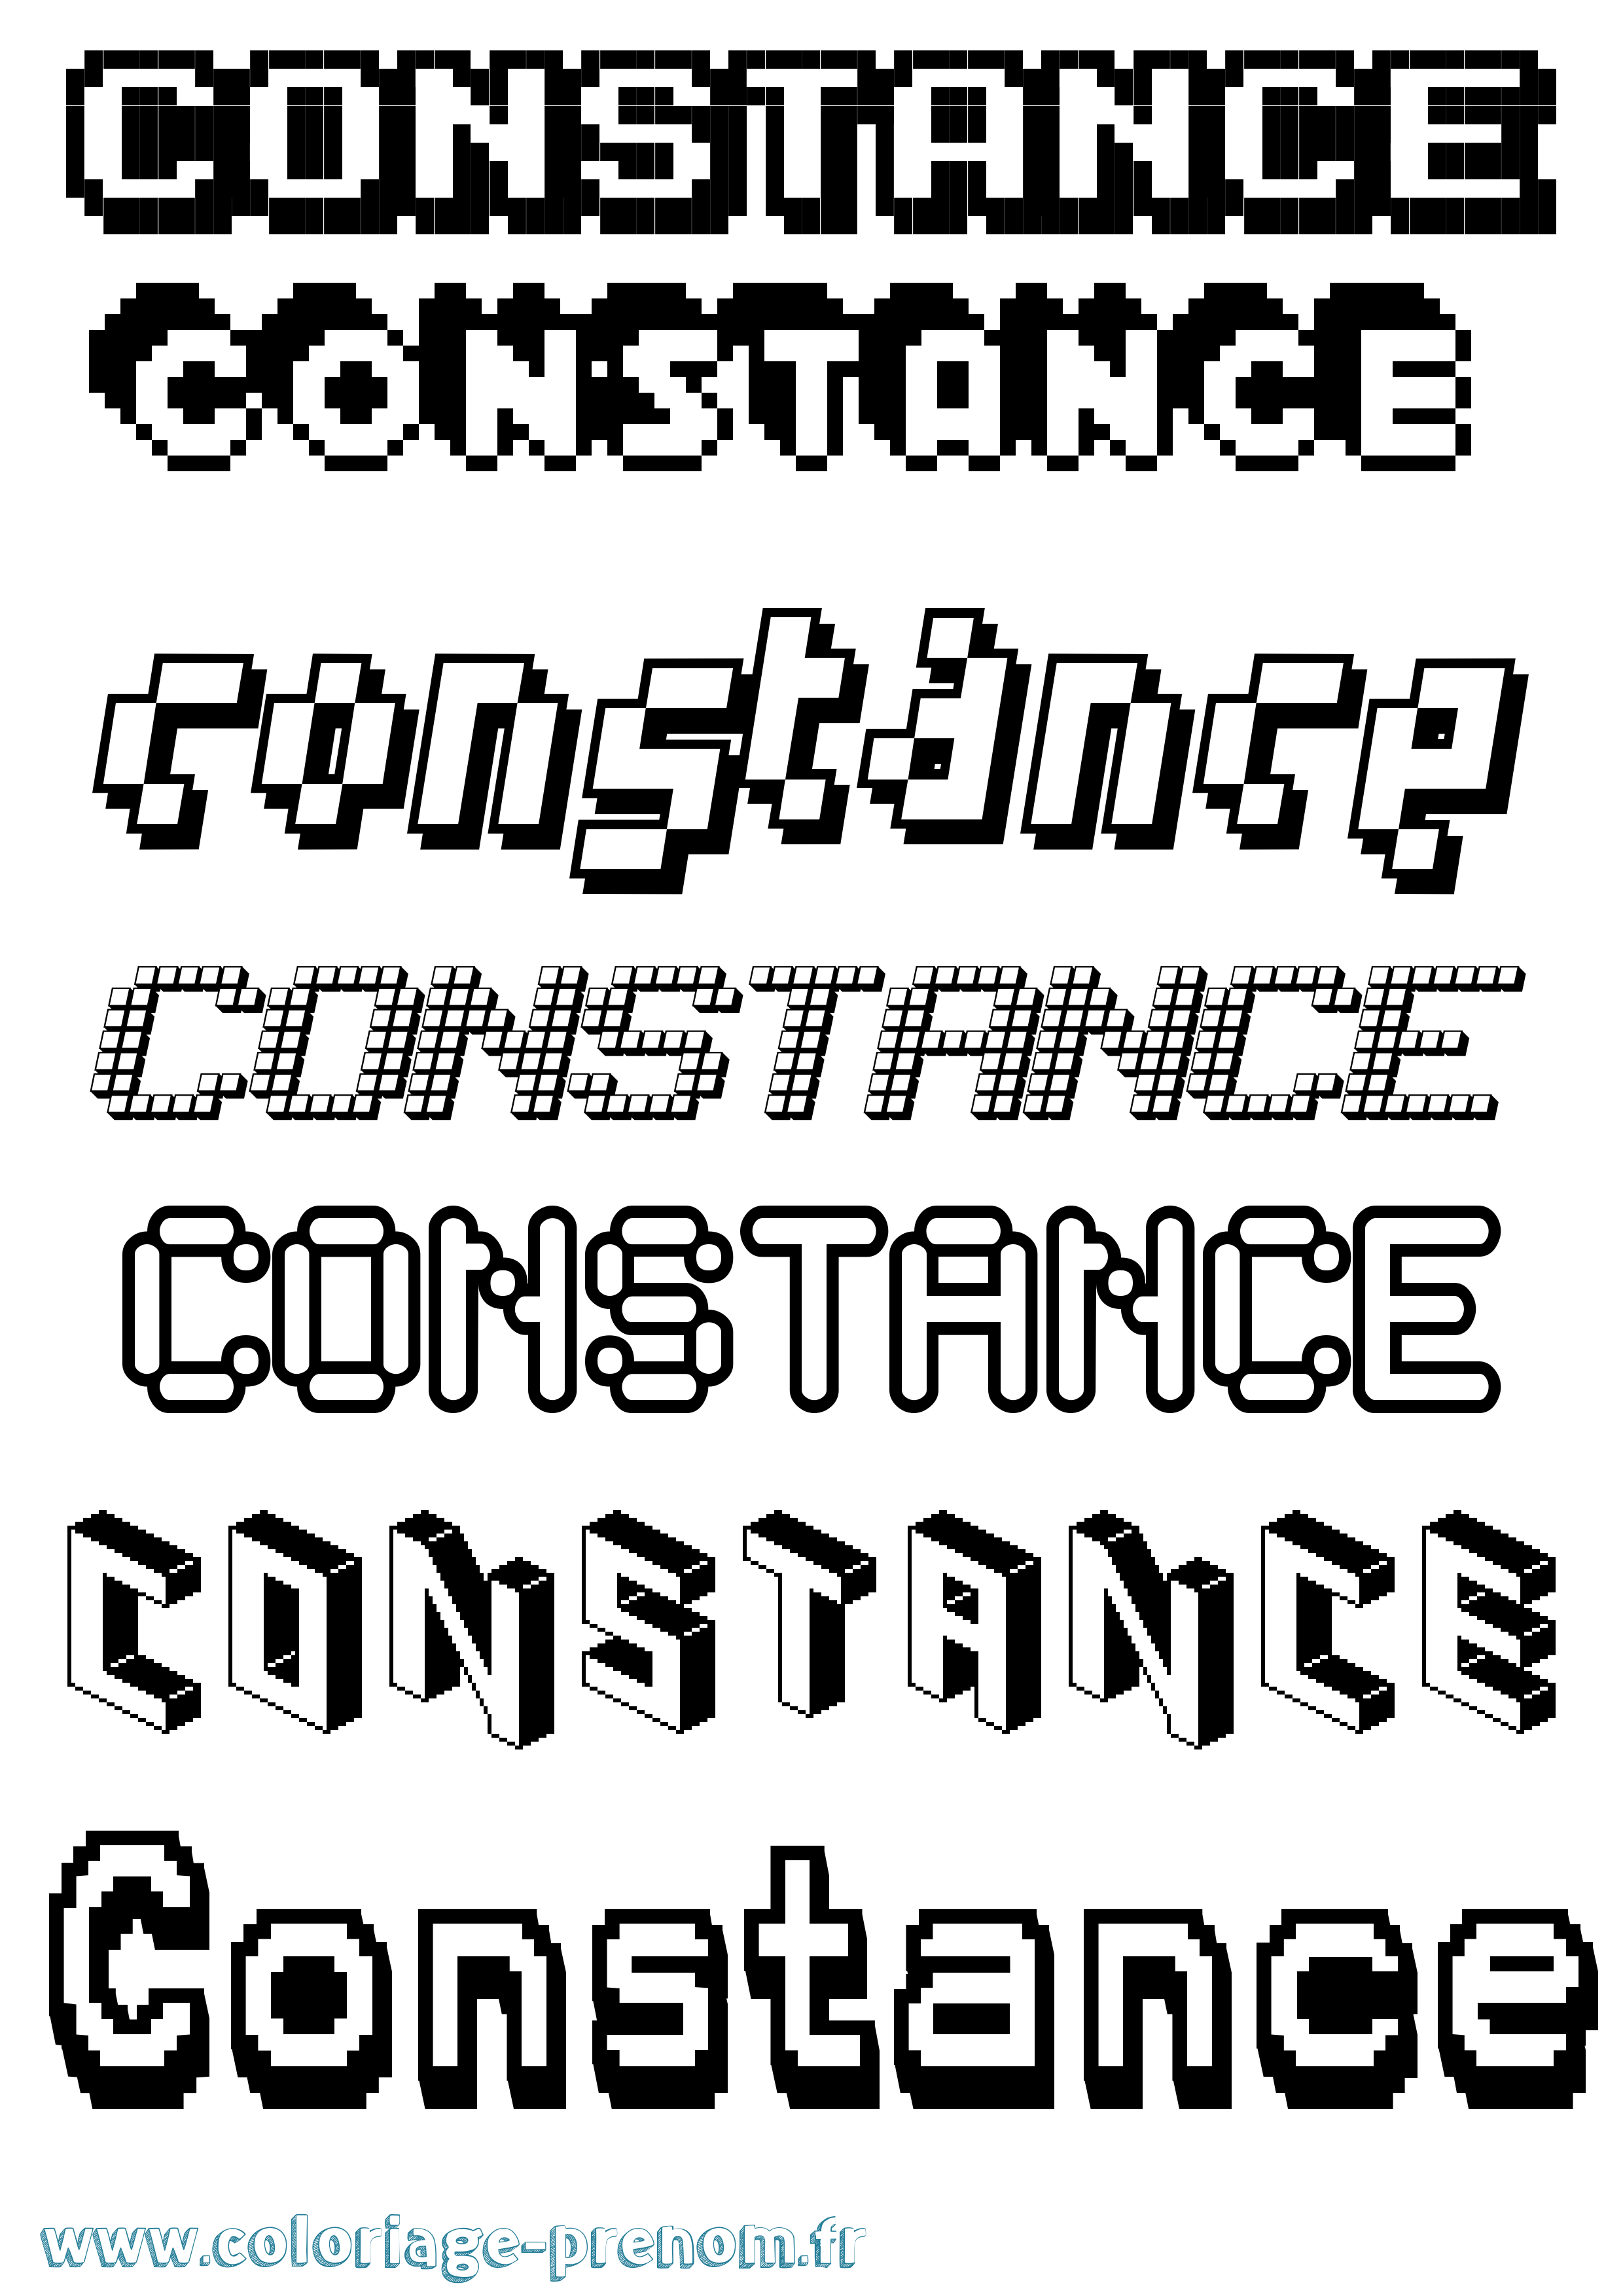 Coloriage prénom Constance Pixel